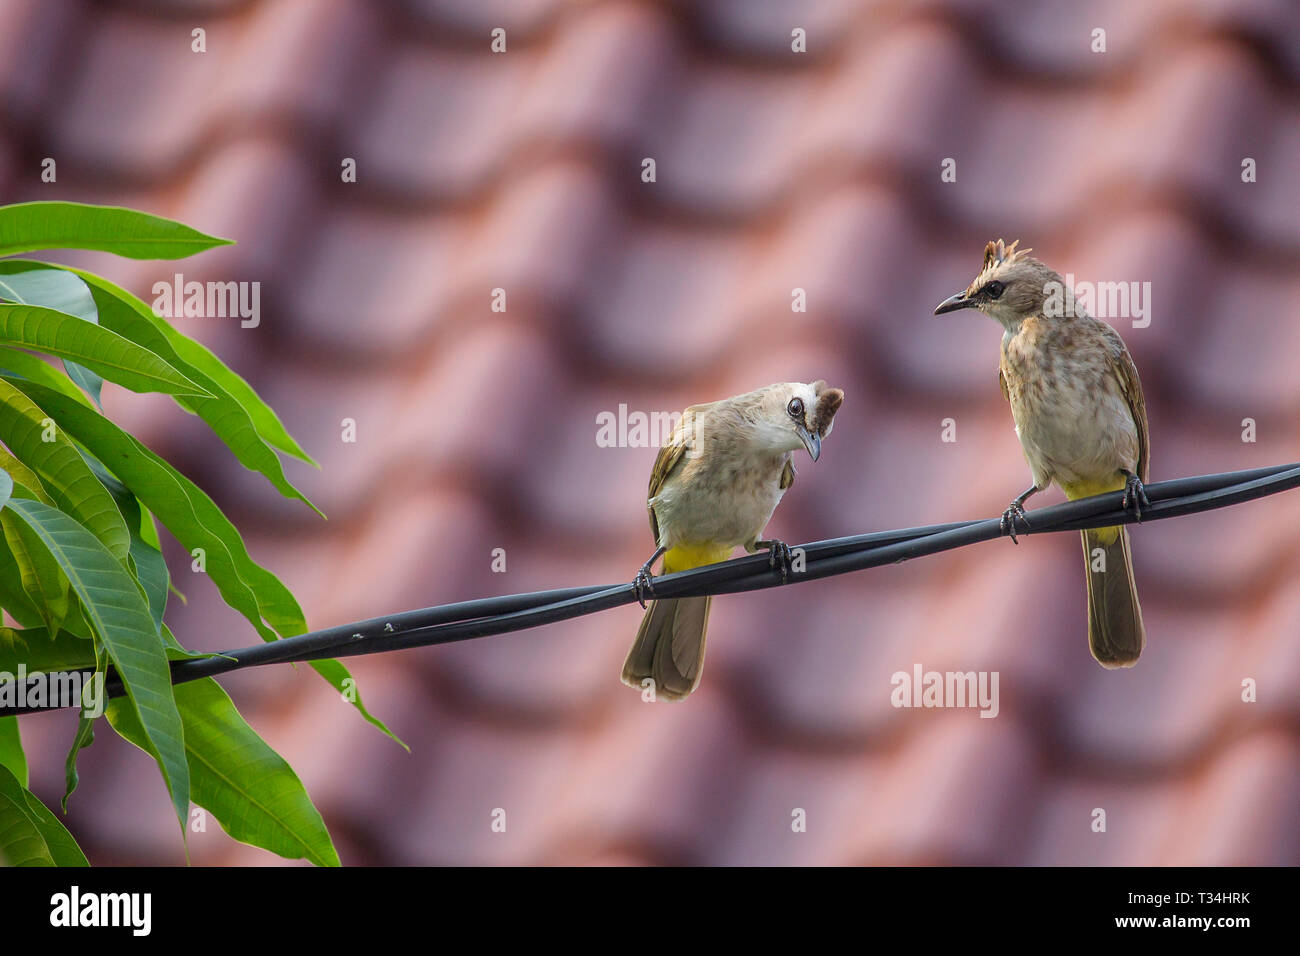 Zwei Vögel auf einem Netzkabel, Indonesien Stockfoto